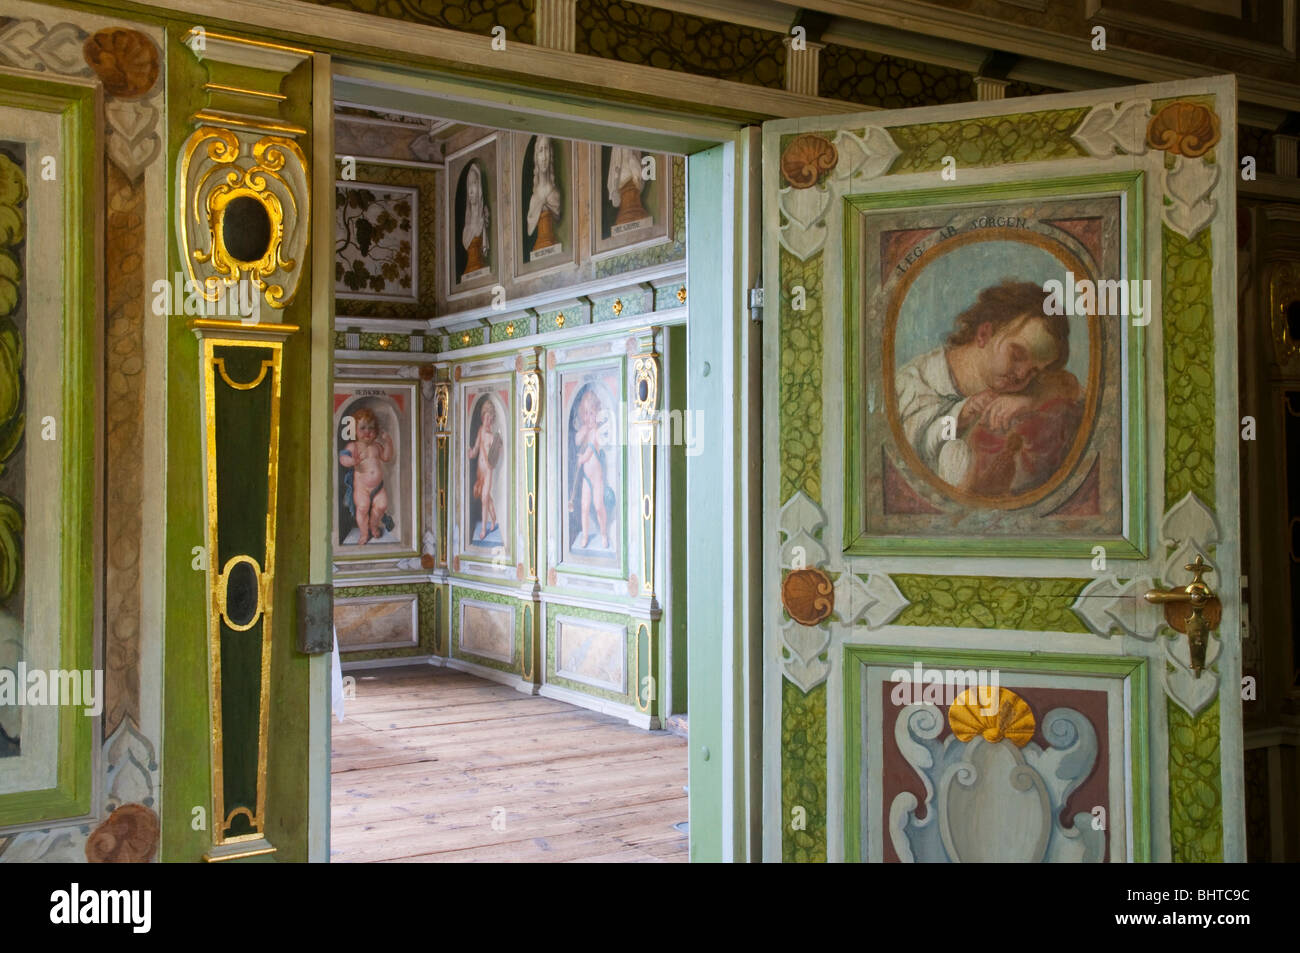 Prix de peintures murales, Manoir de Loessnitz, Radebeul près de Dresde, Allemagne Banque D'Images